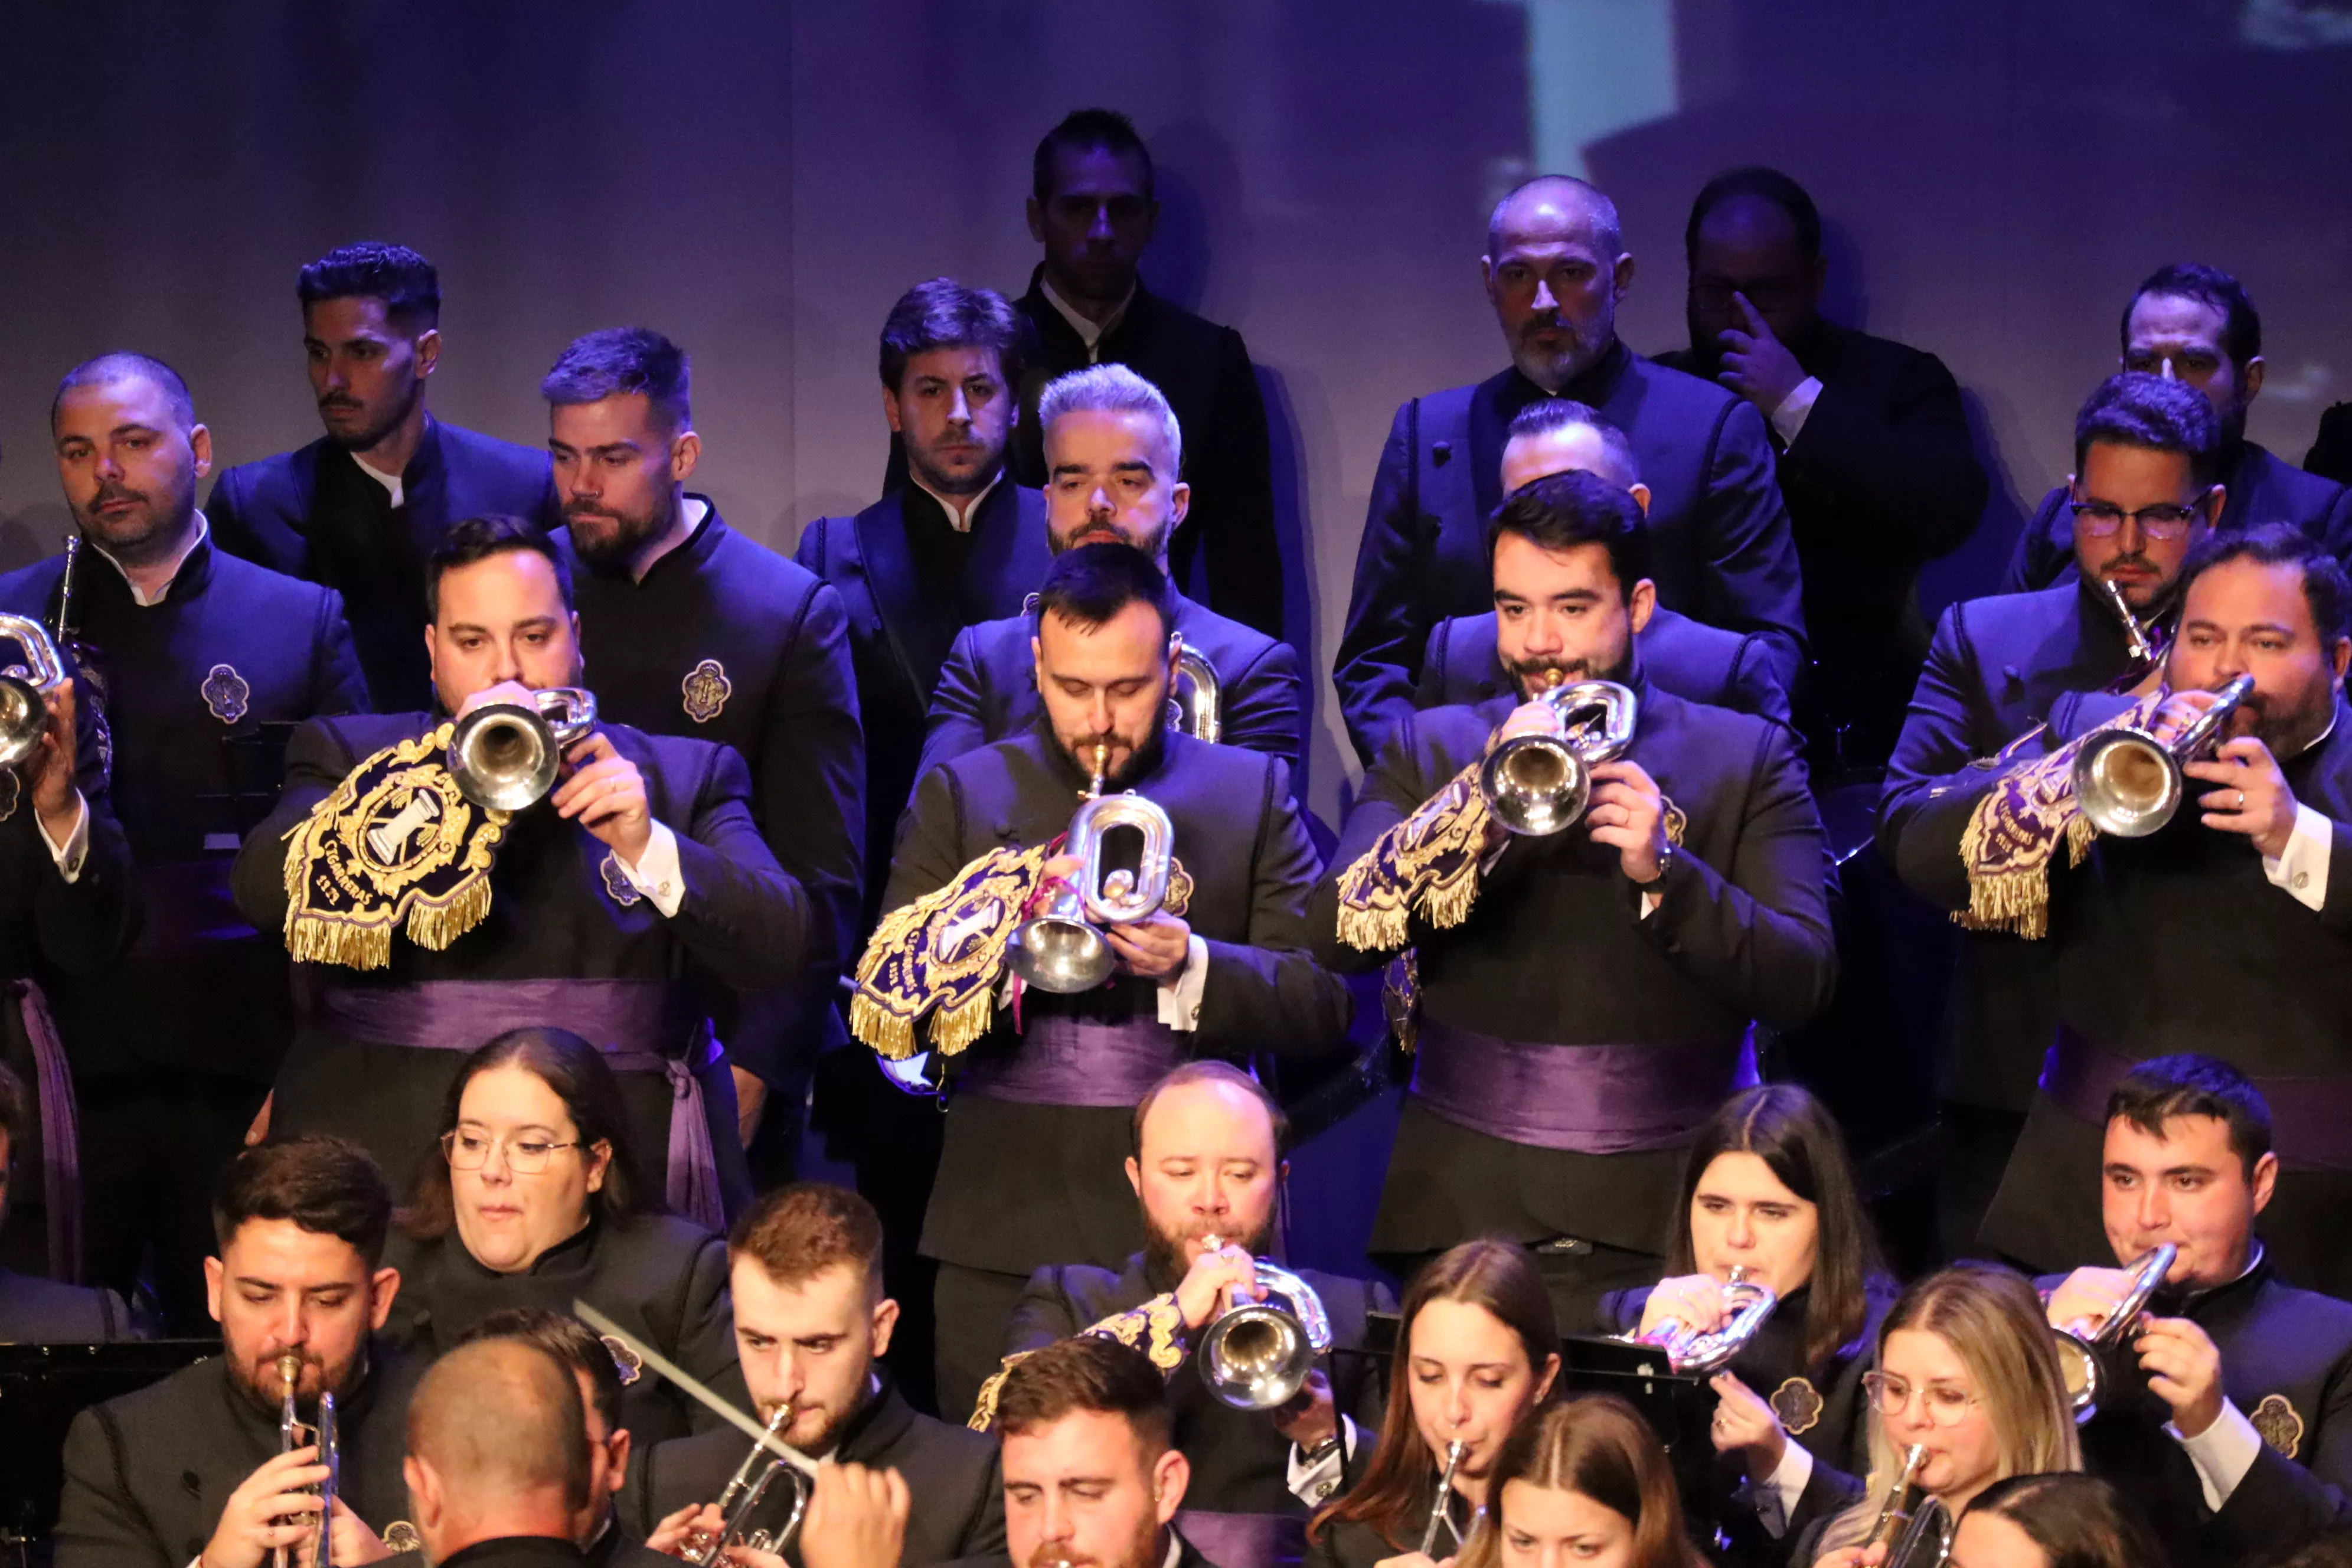 Concierto Columna Centenaria: Banda de cornetas y tambores Nuestra Señora de la Victoria "Las Cigarreras"